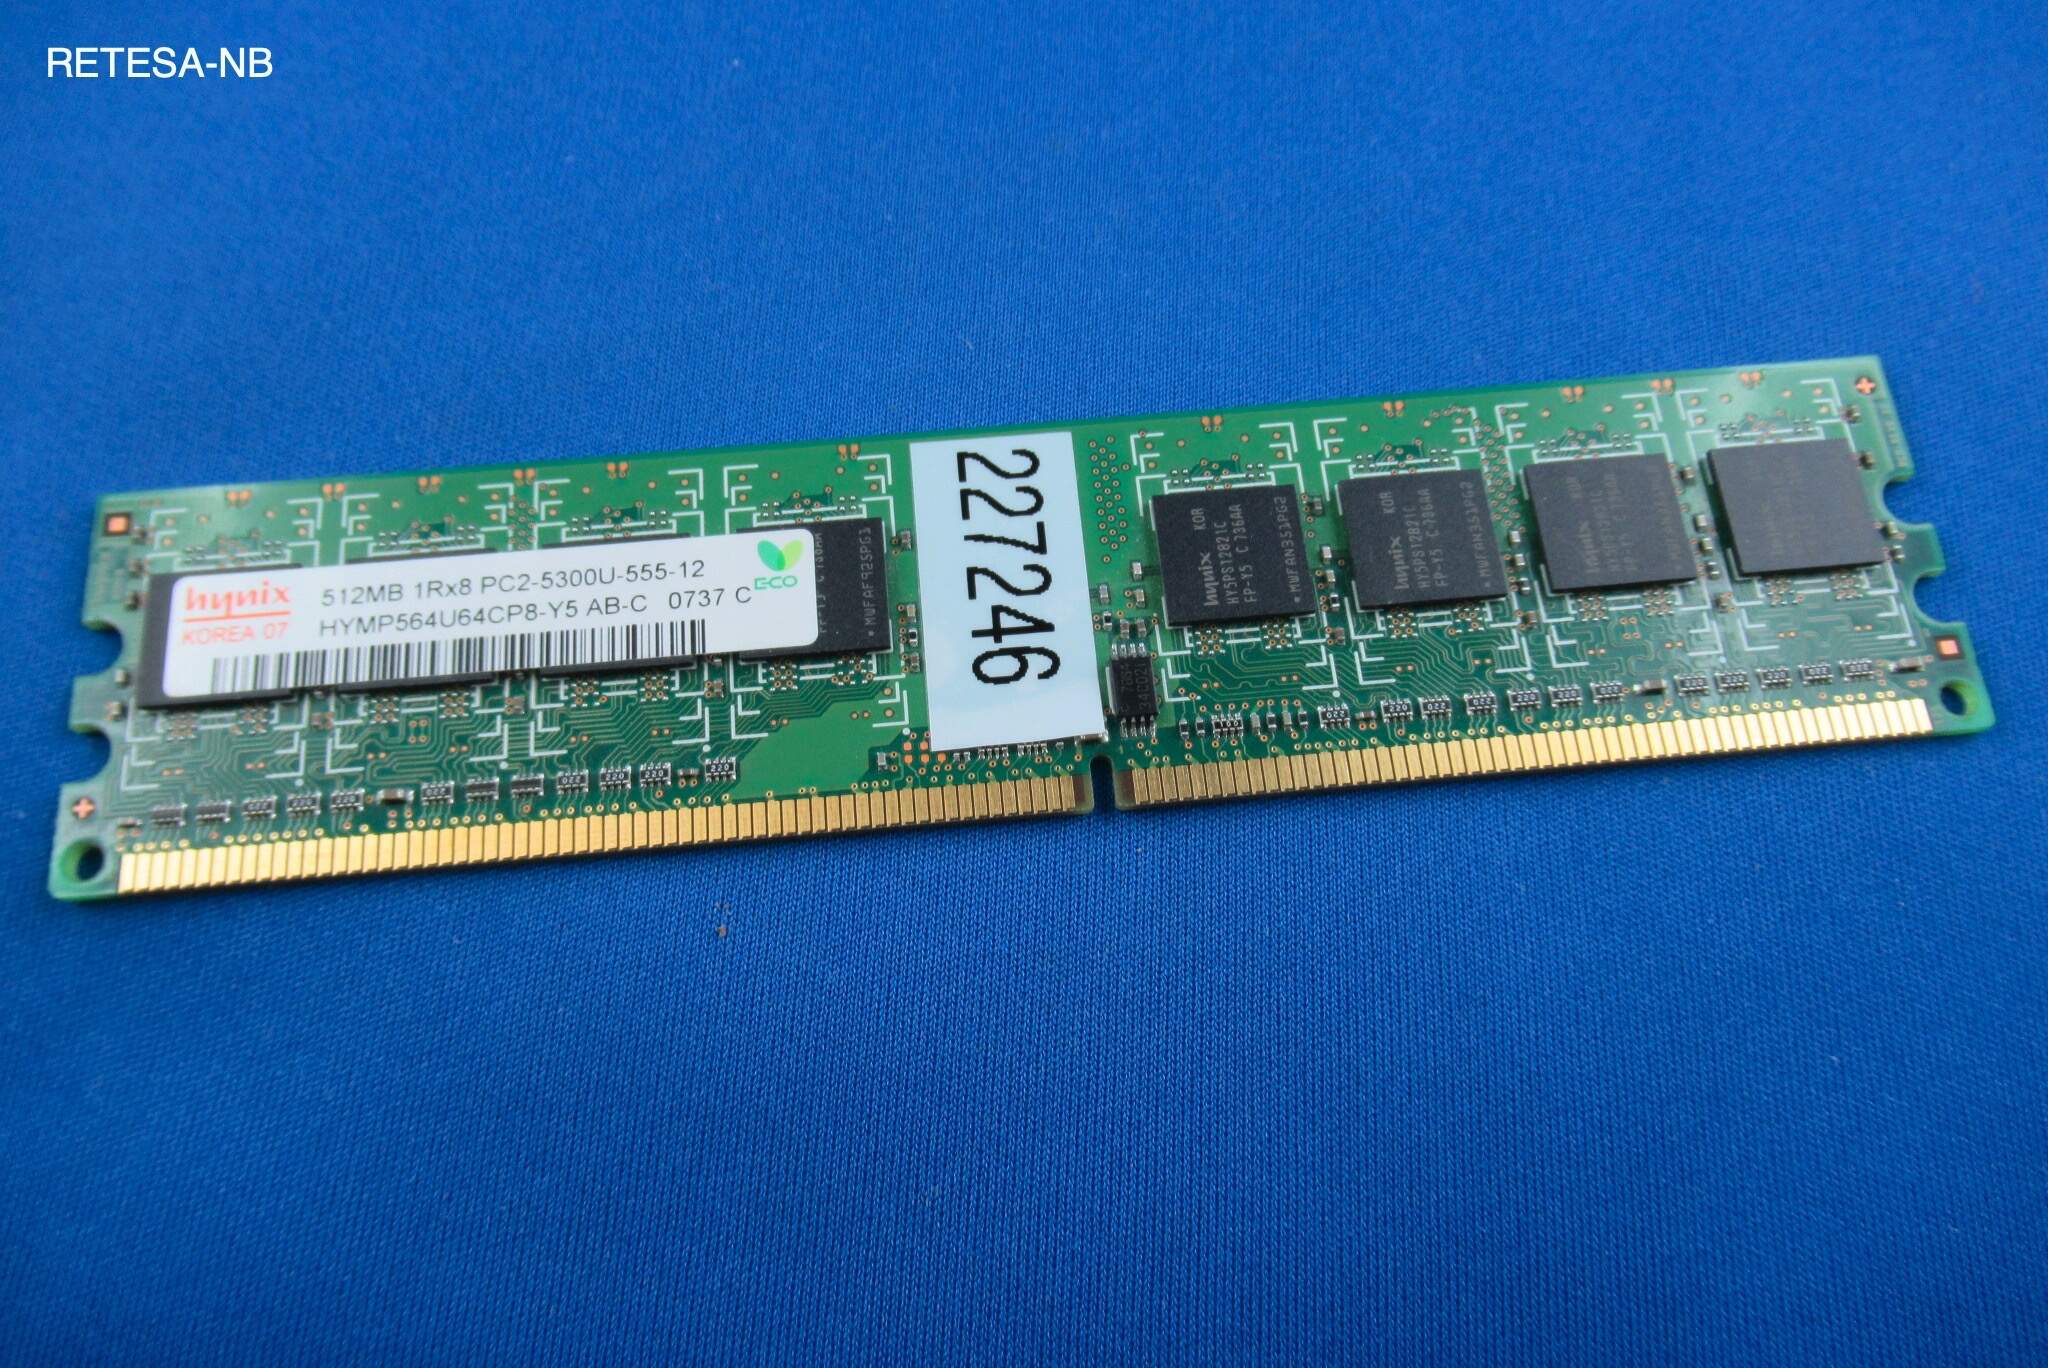 GEBRAUCHT DDR2-RAM 512MB PC667 HYNIX HYMP564U64CP8-Y5